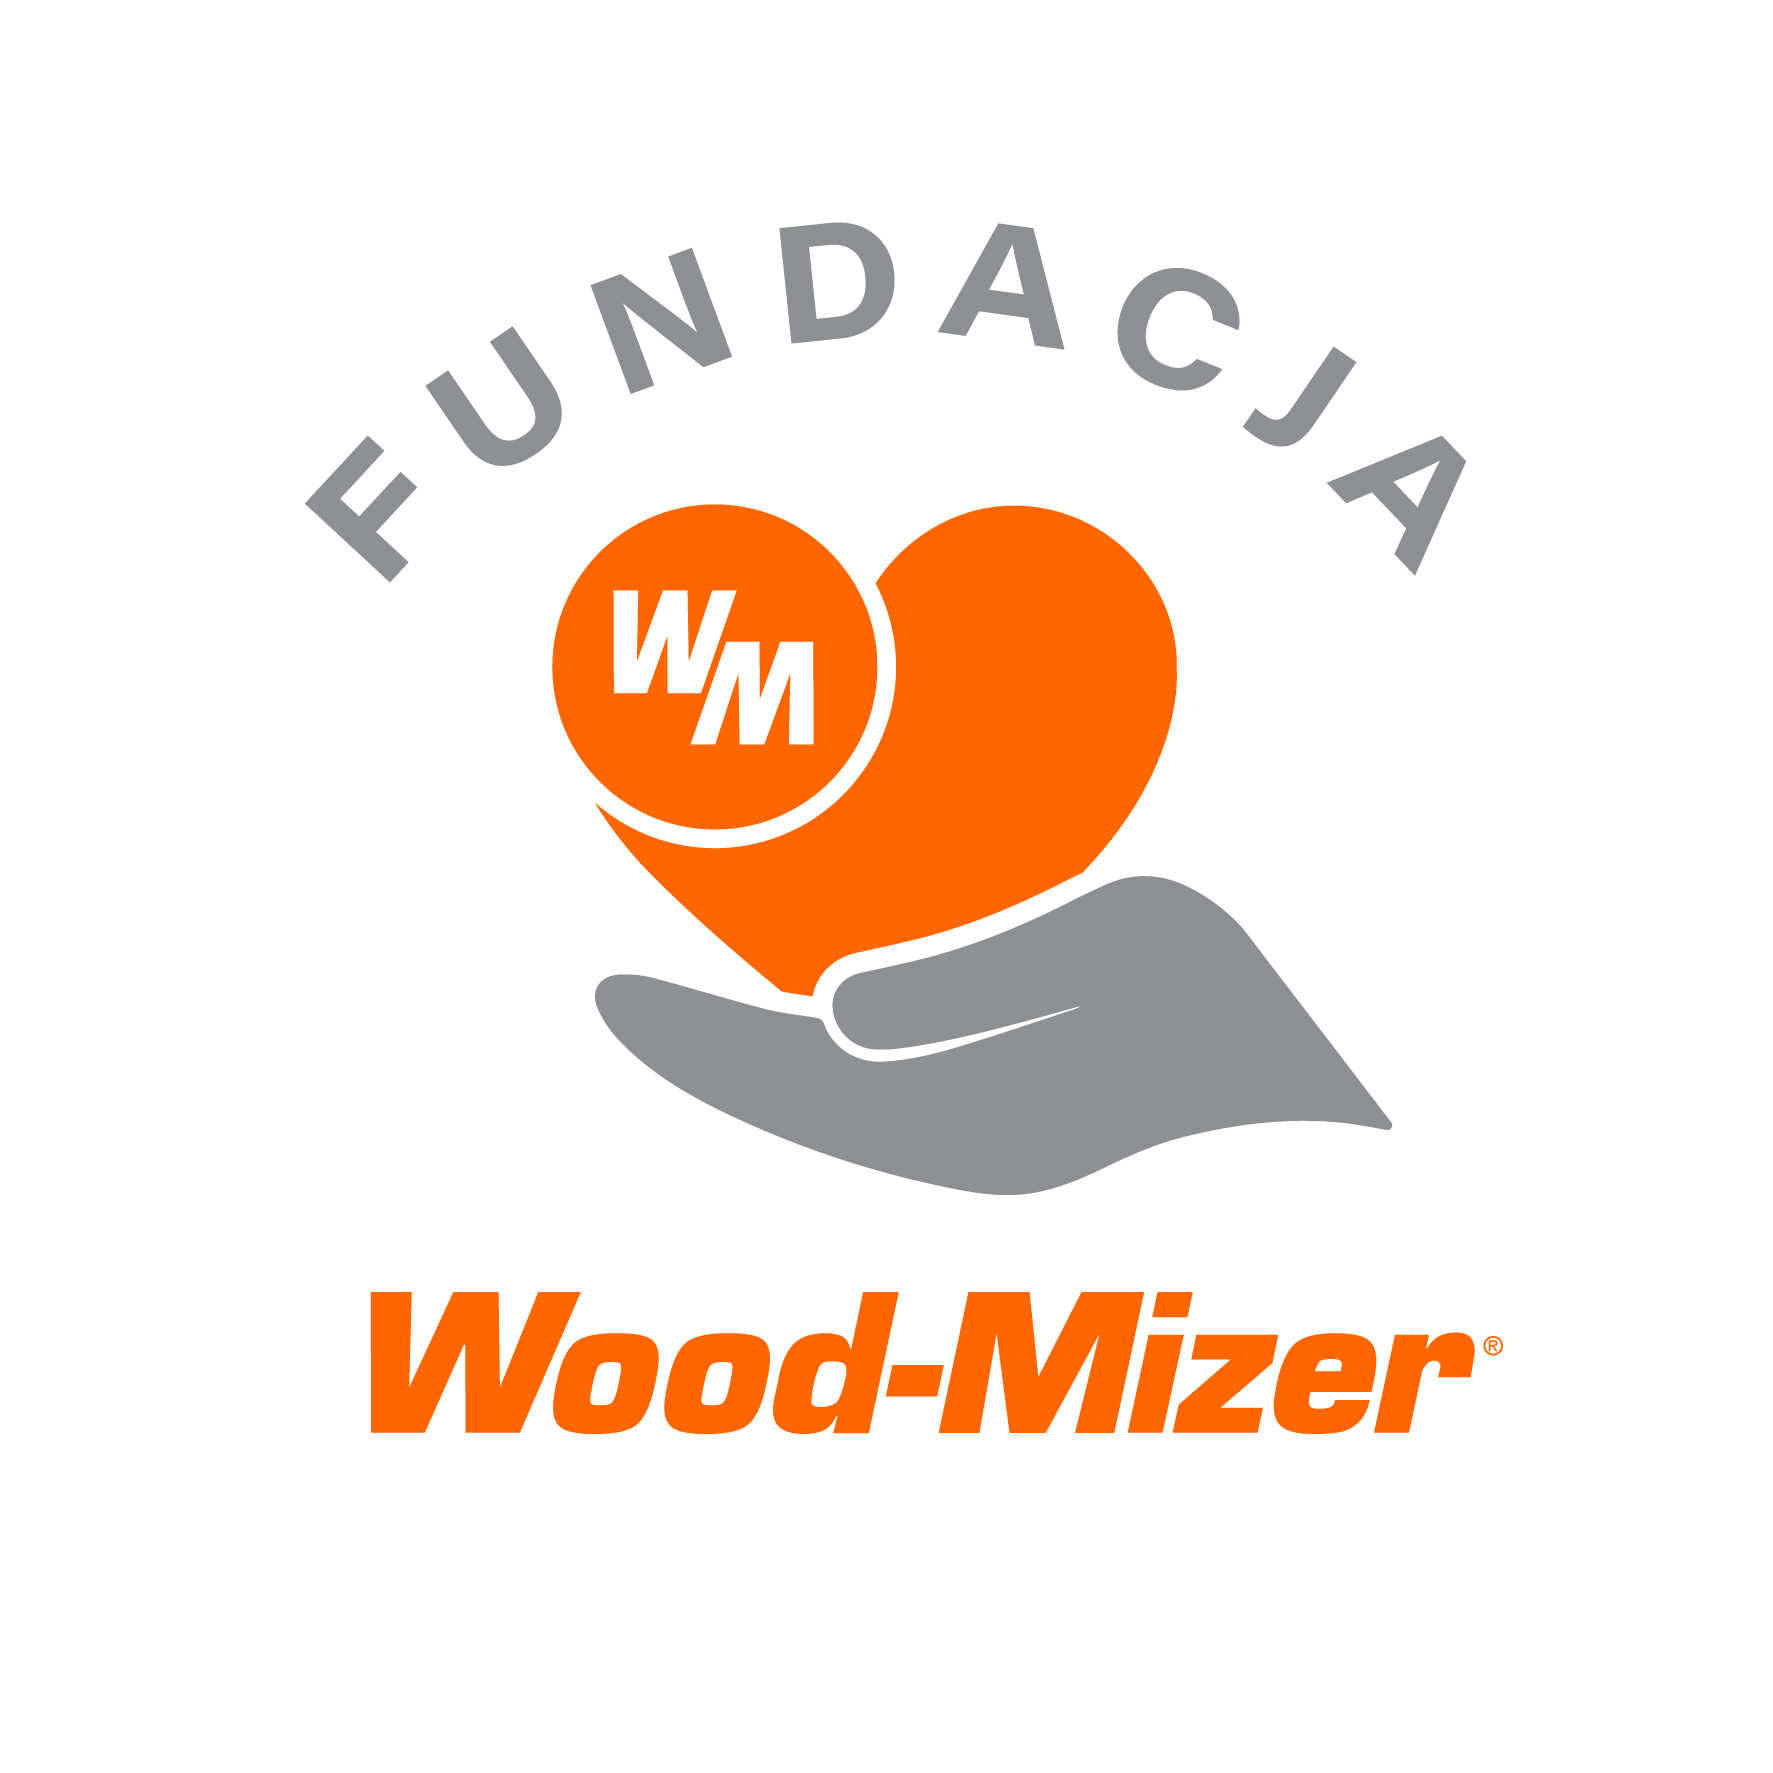 Logo fundacji Wood-Mizer „Podzielmy Się Sercem”, tekst pod logiem.